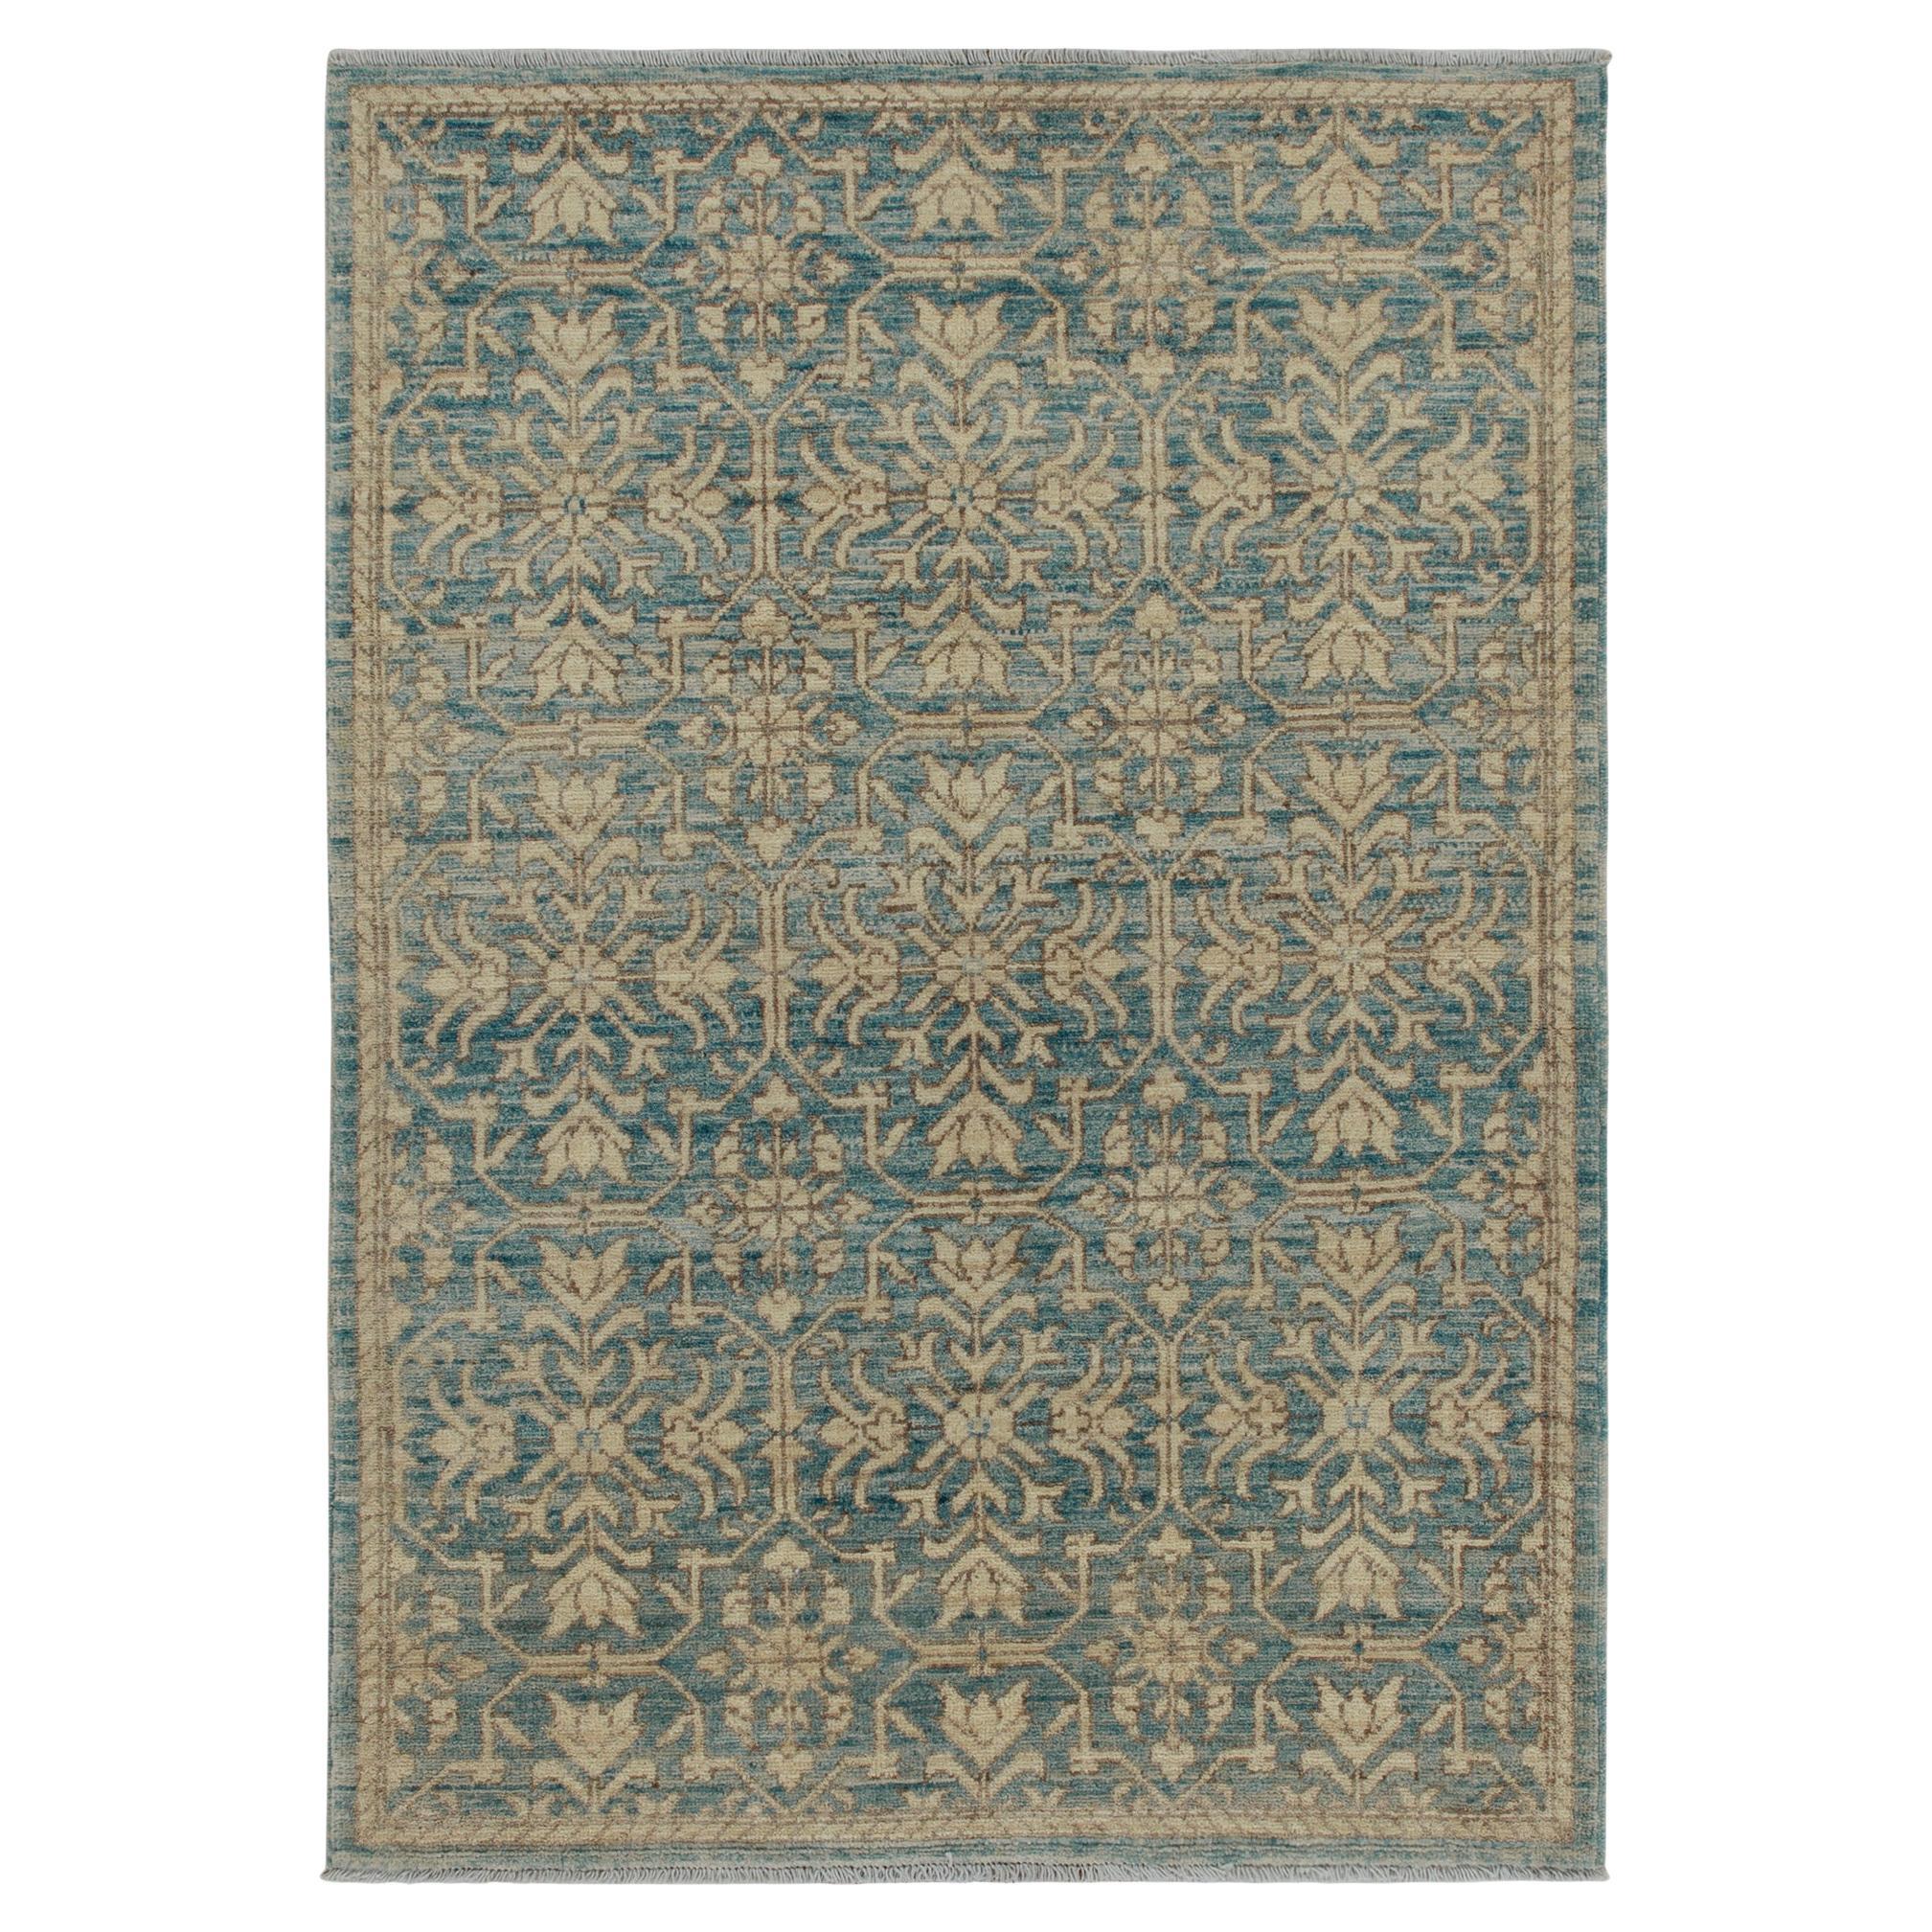 Teppich &amp; Kilims Zeitgenössischer Teppich in Blau mit beige-braunen Blumenmustern